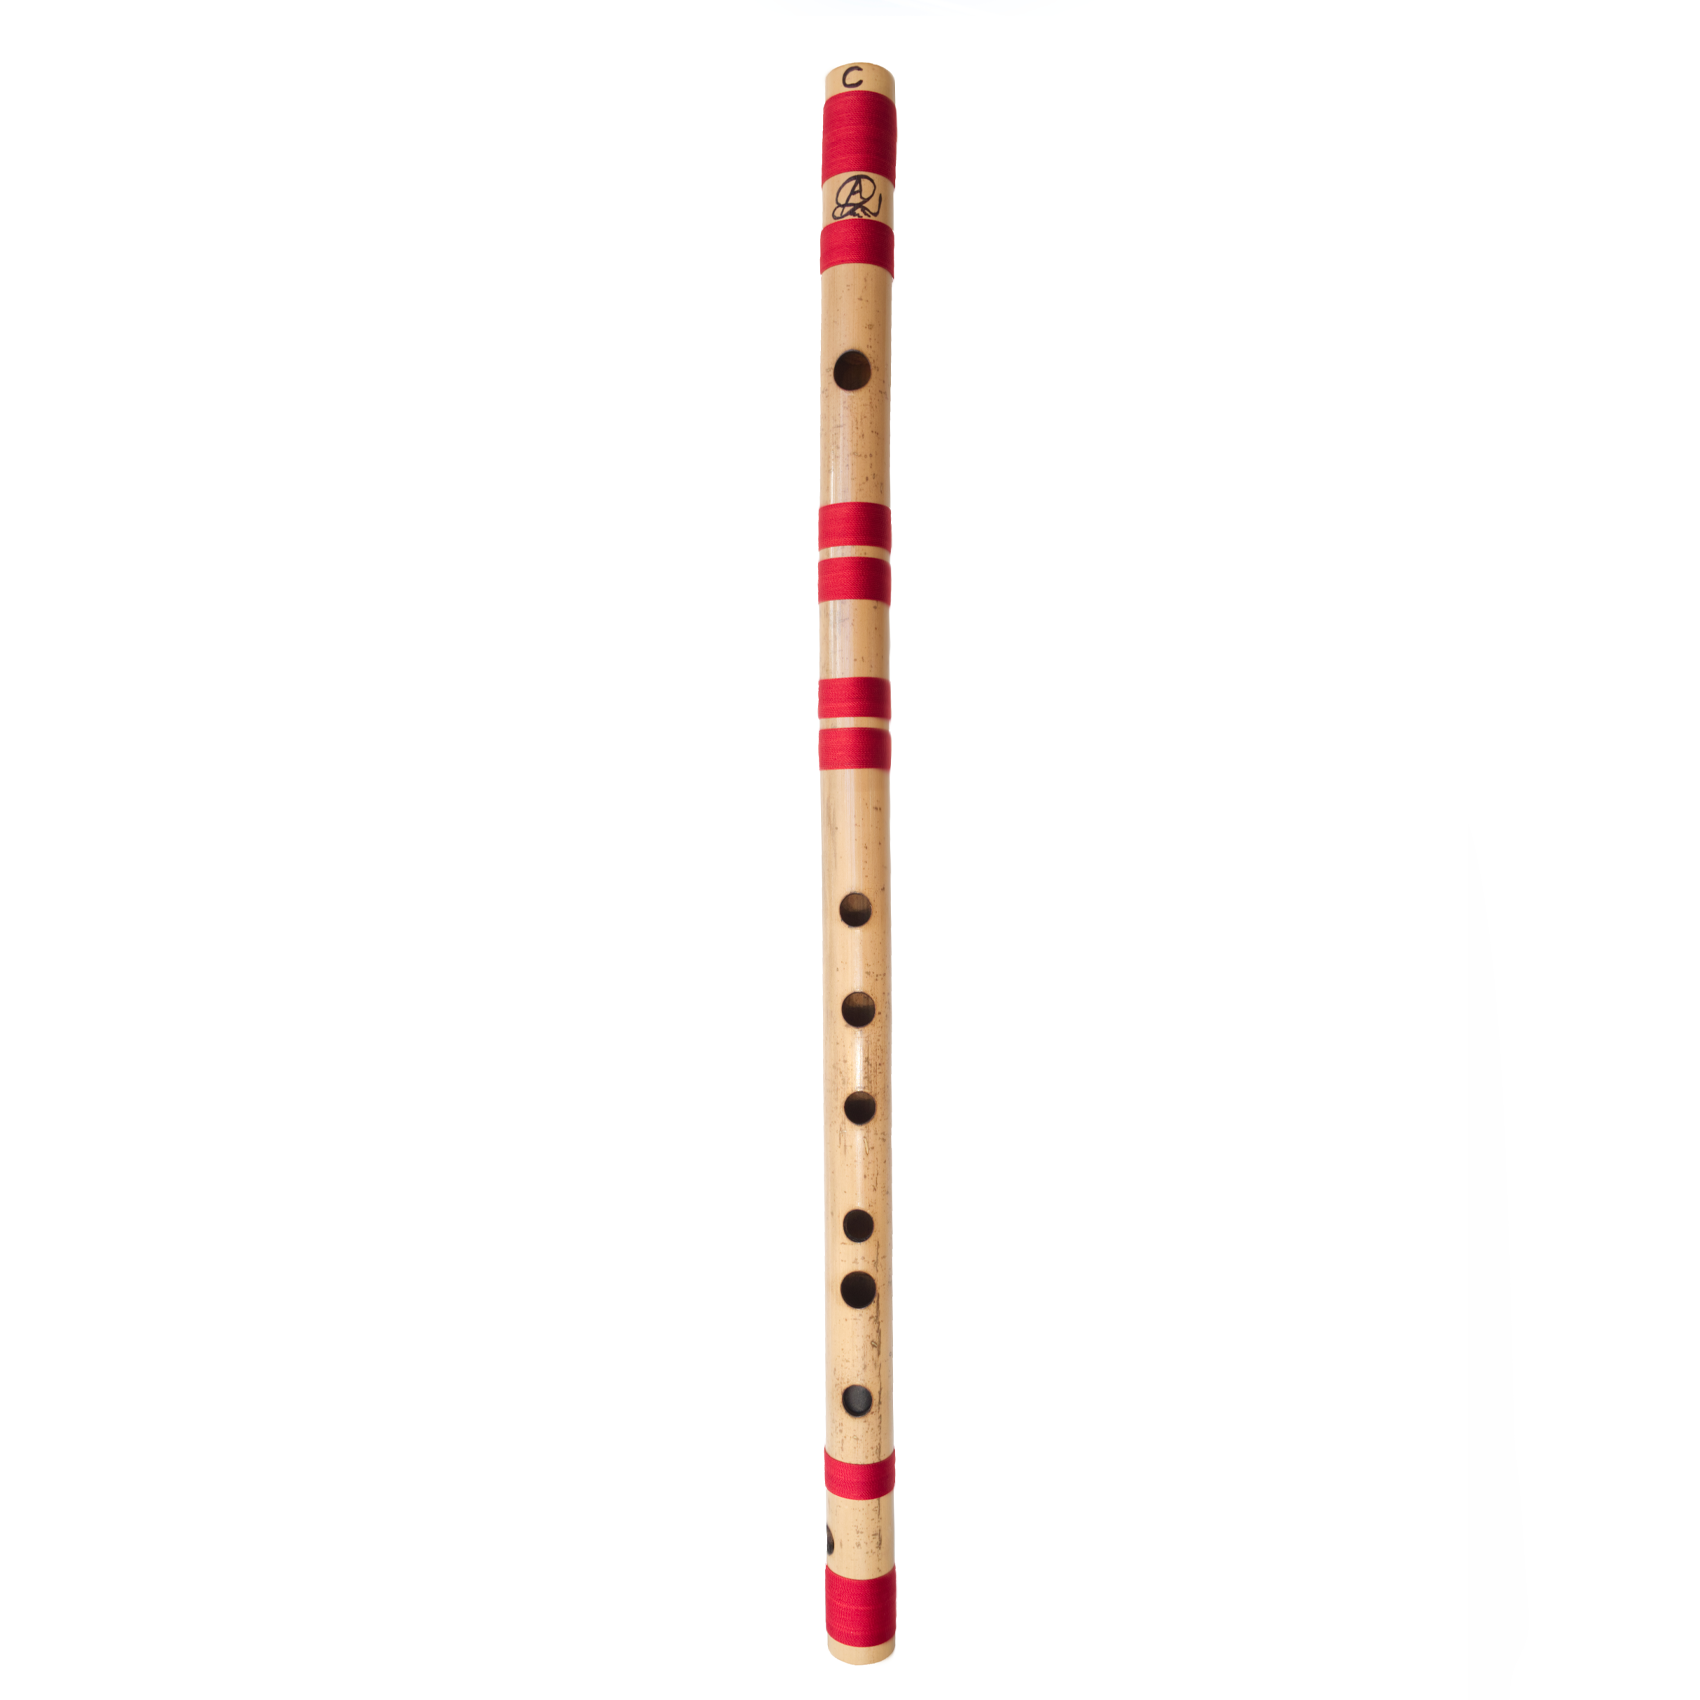 Bansuri Flute - Dhotre Flutes C 